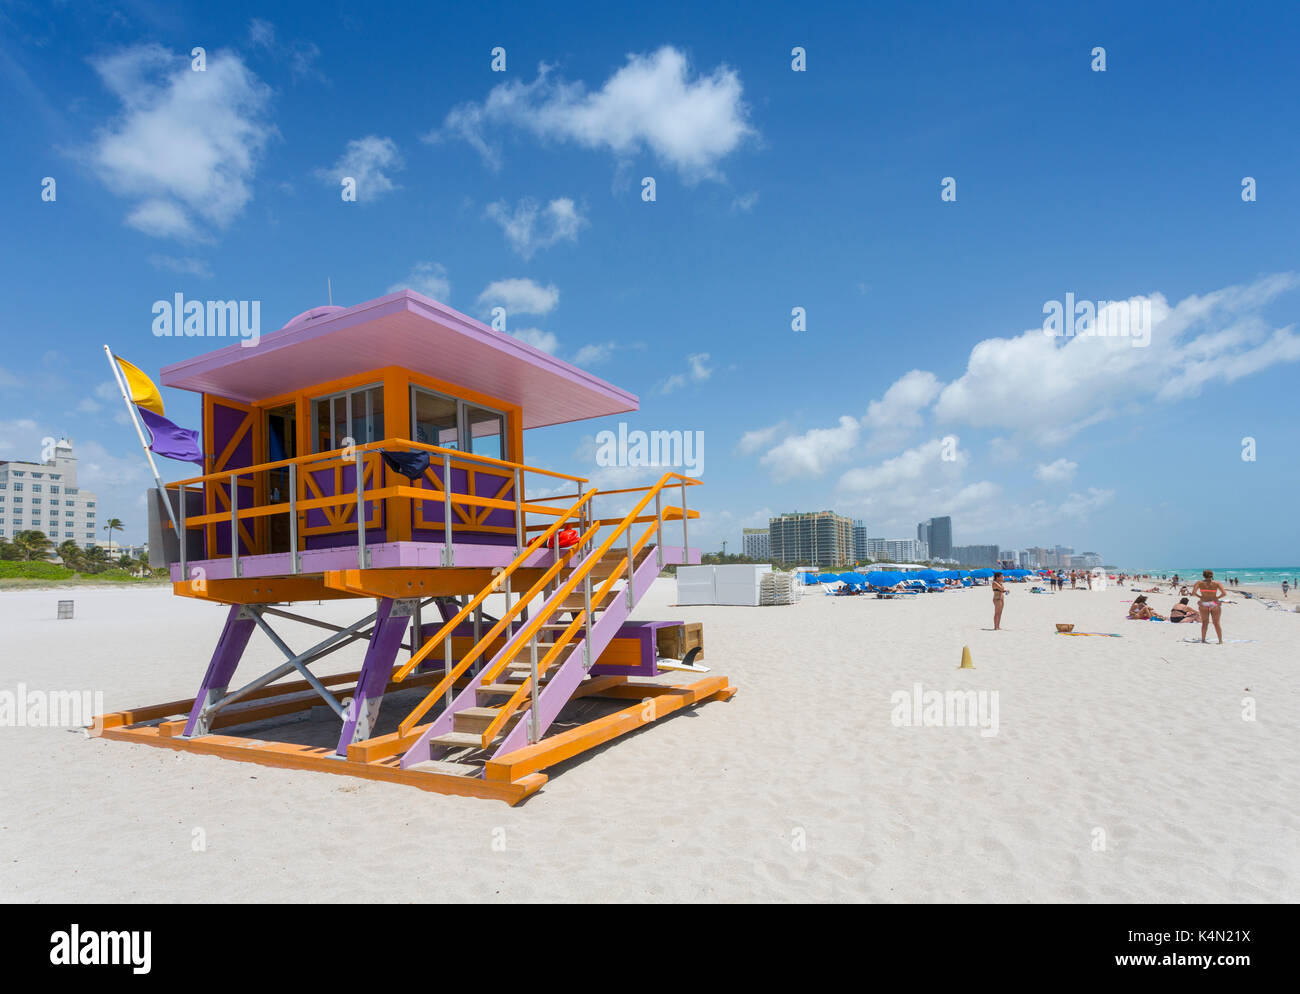 - Nordamerika Miami Alamy von Beach South Vereinigte in Stockfotografie Wachturm Florida, Rettungsschwimmer von am Amerika, Beach, Staaten Miami, Strand